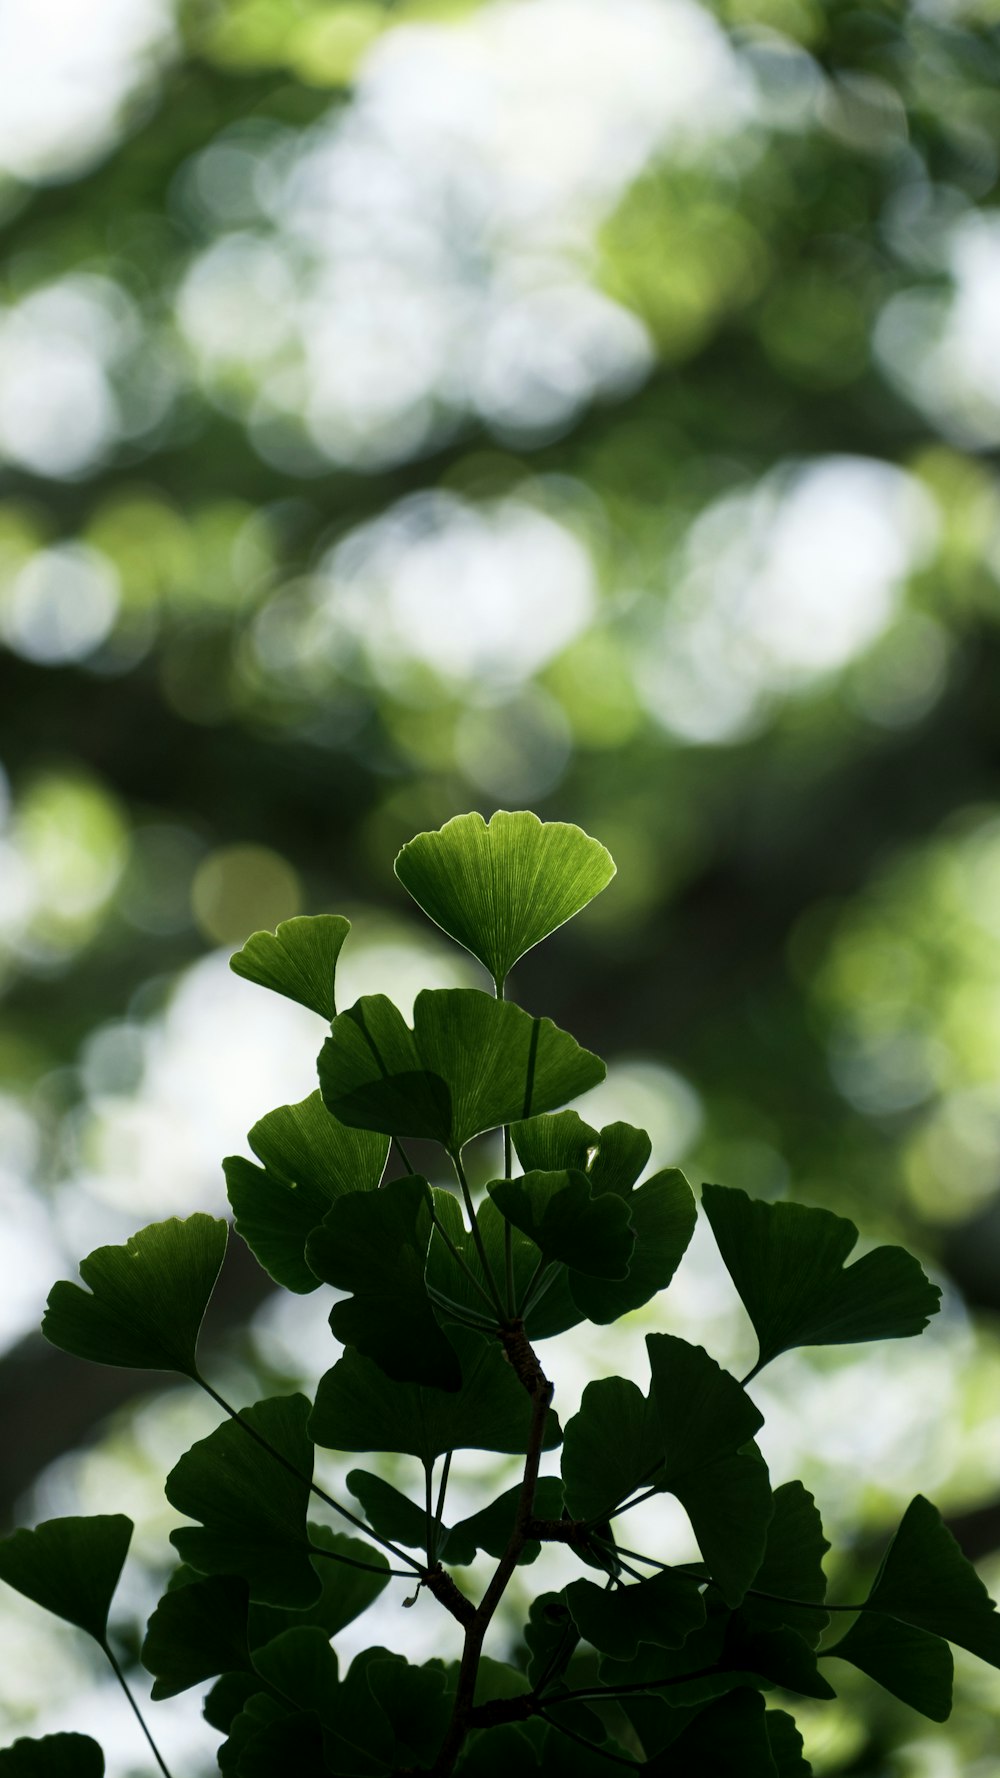 foglie verdi nella lente Tilt Shift